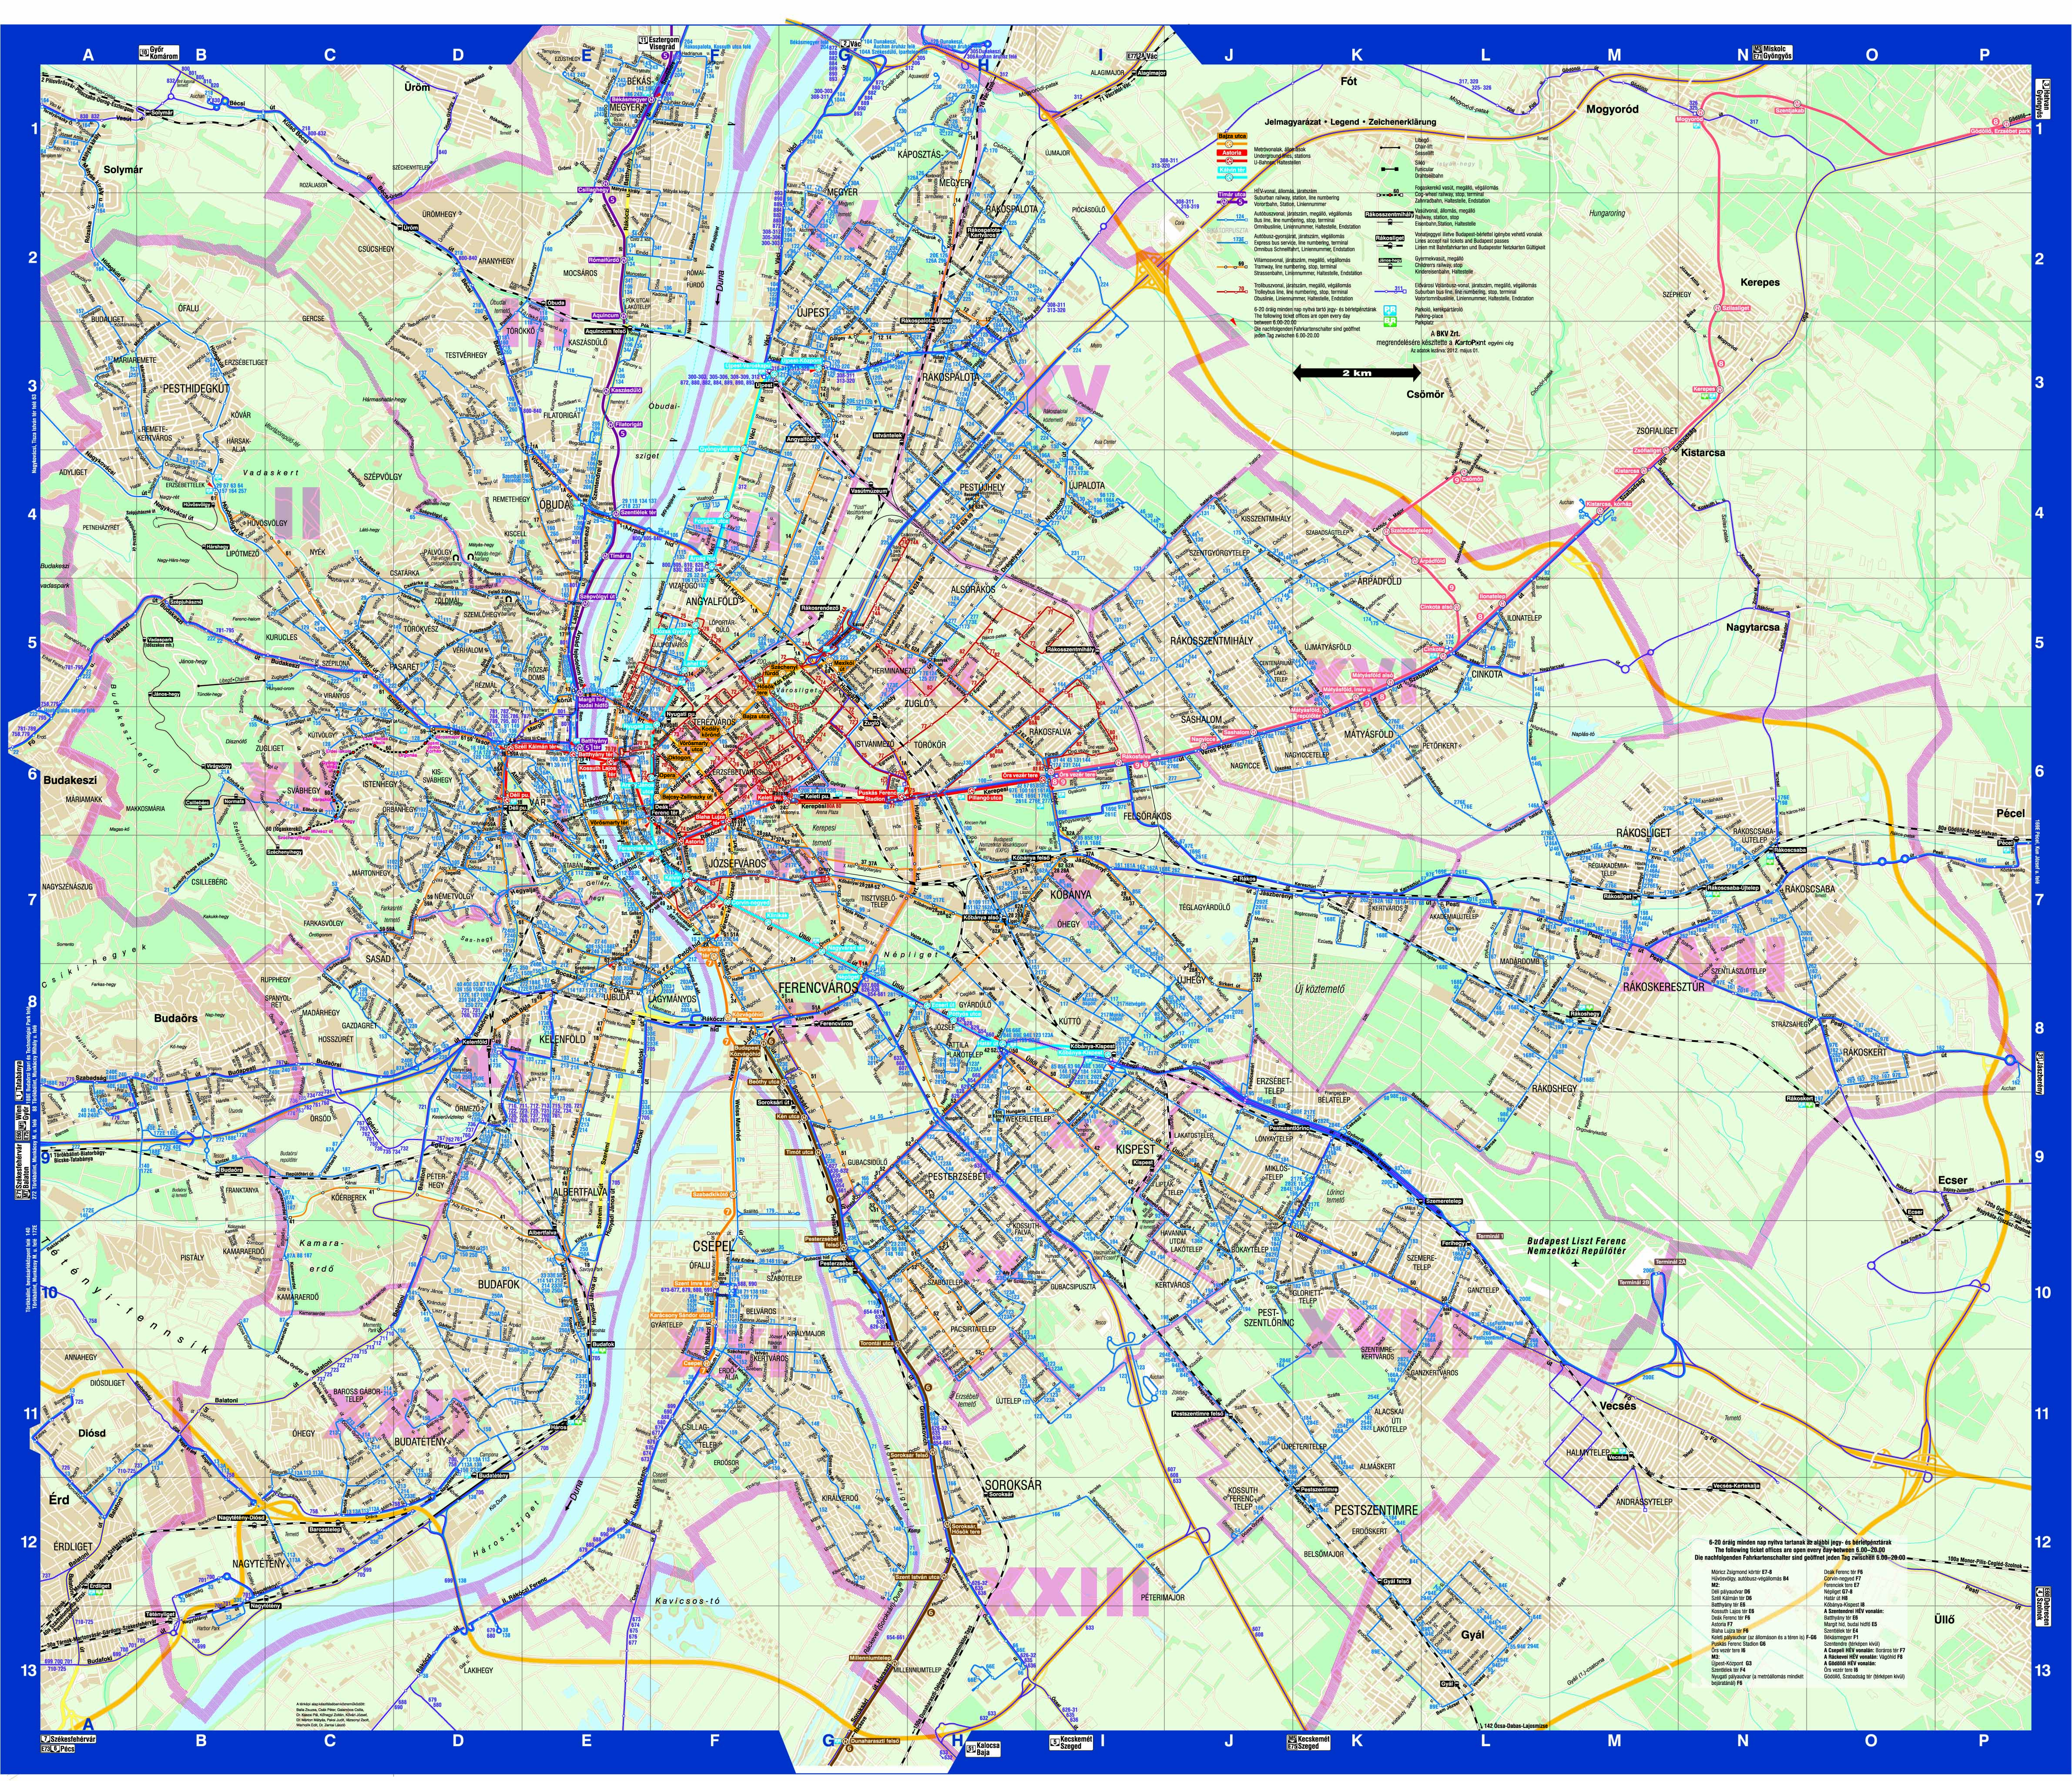 budapest térkép tömegközlekedés Budapest közösségi közlekekedésének utasterheltsége budapest térkép tömegközlekedés